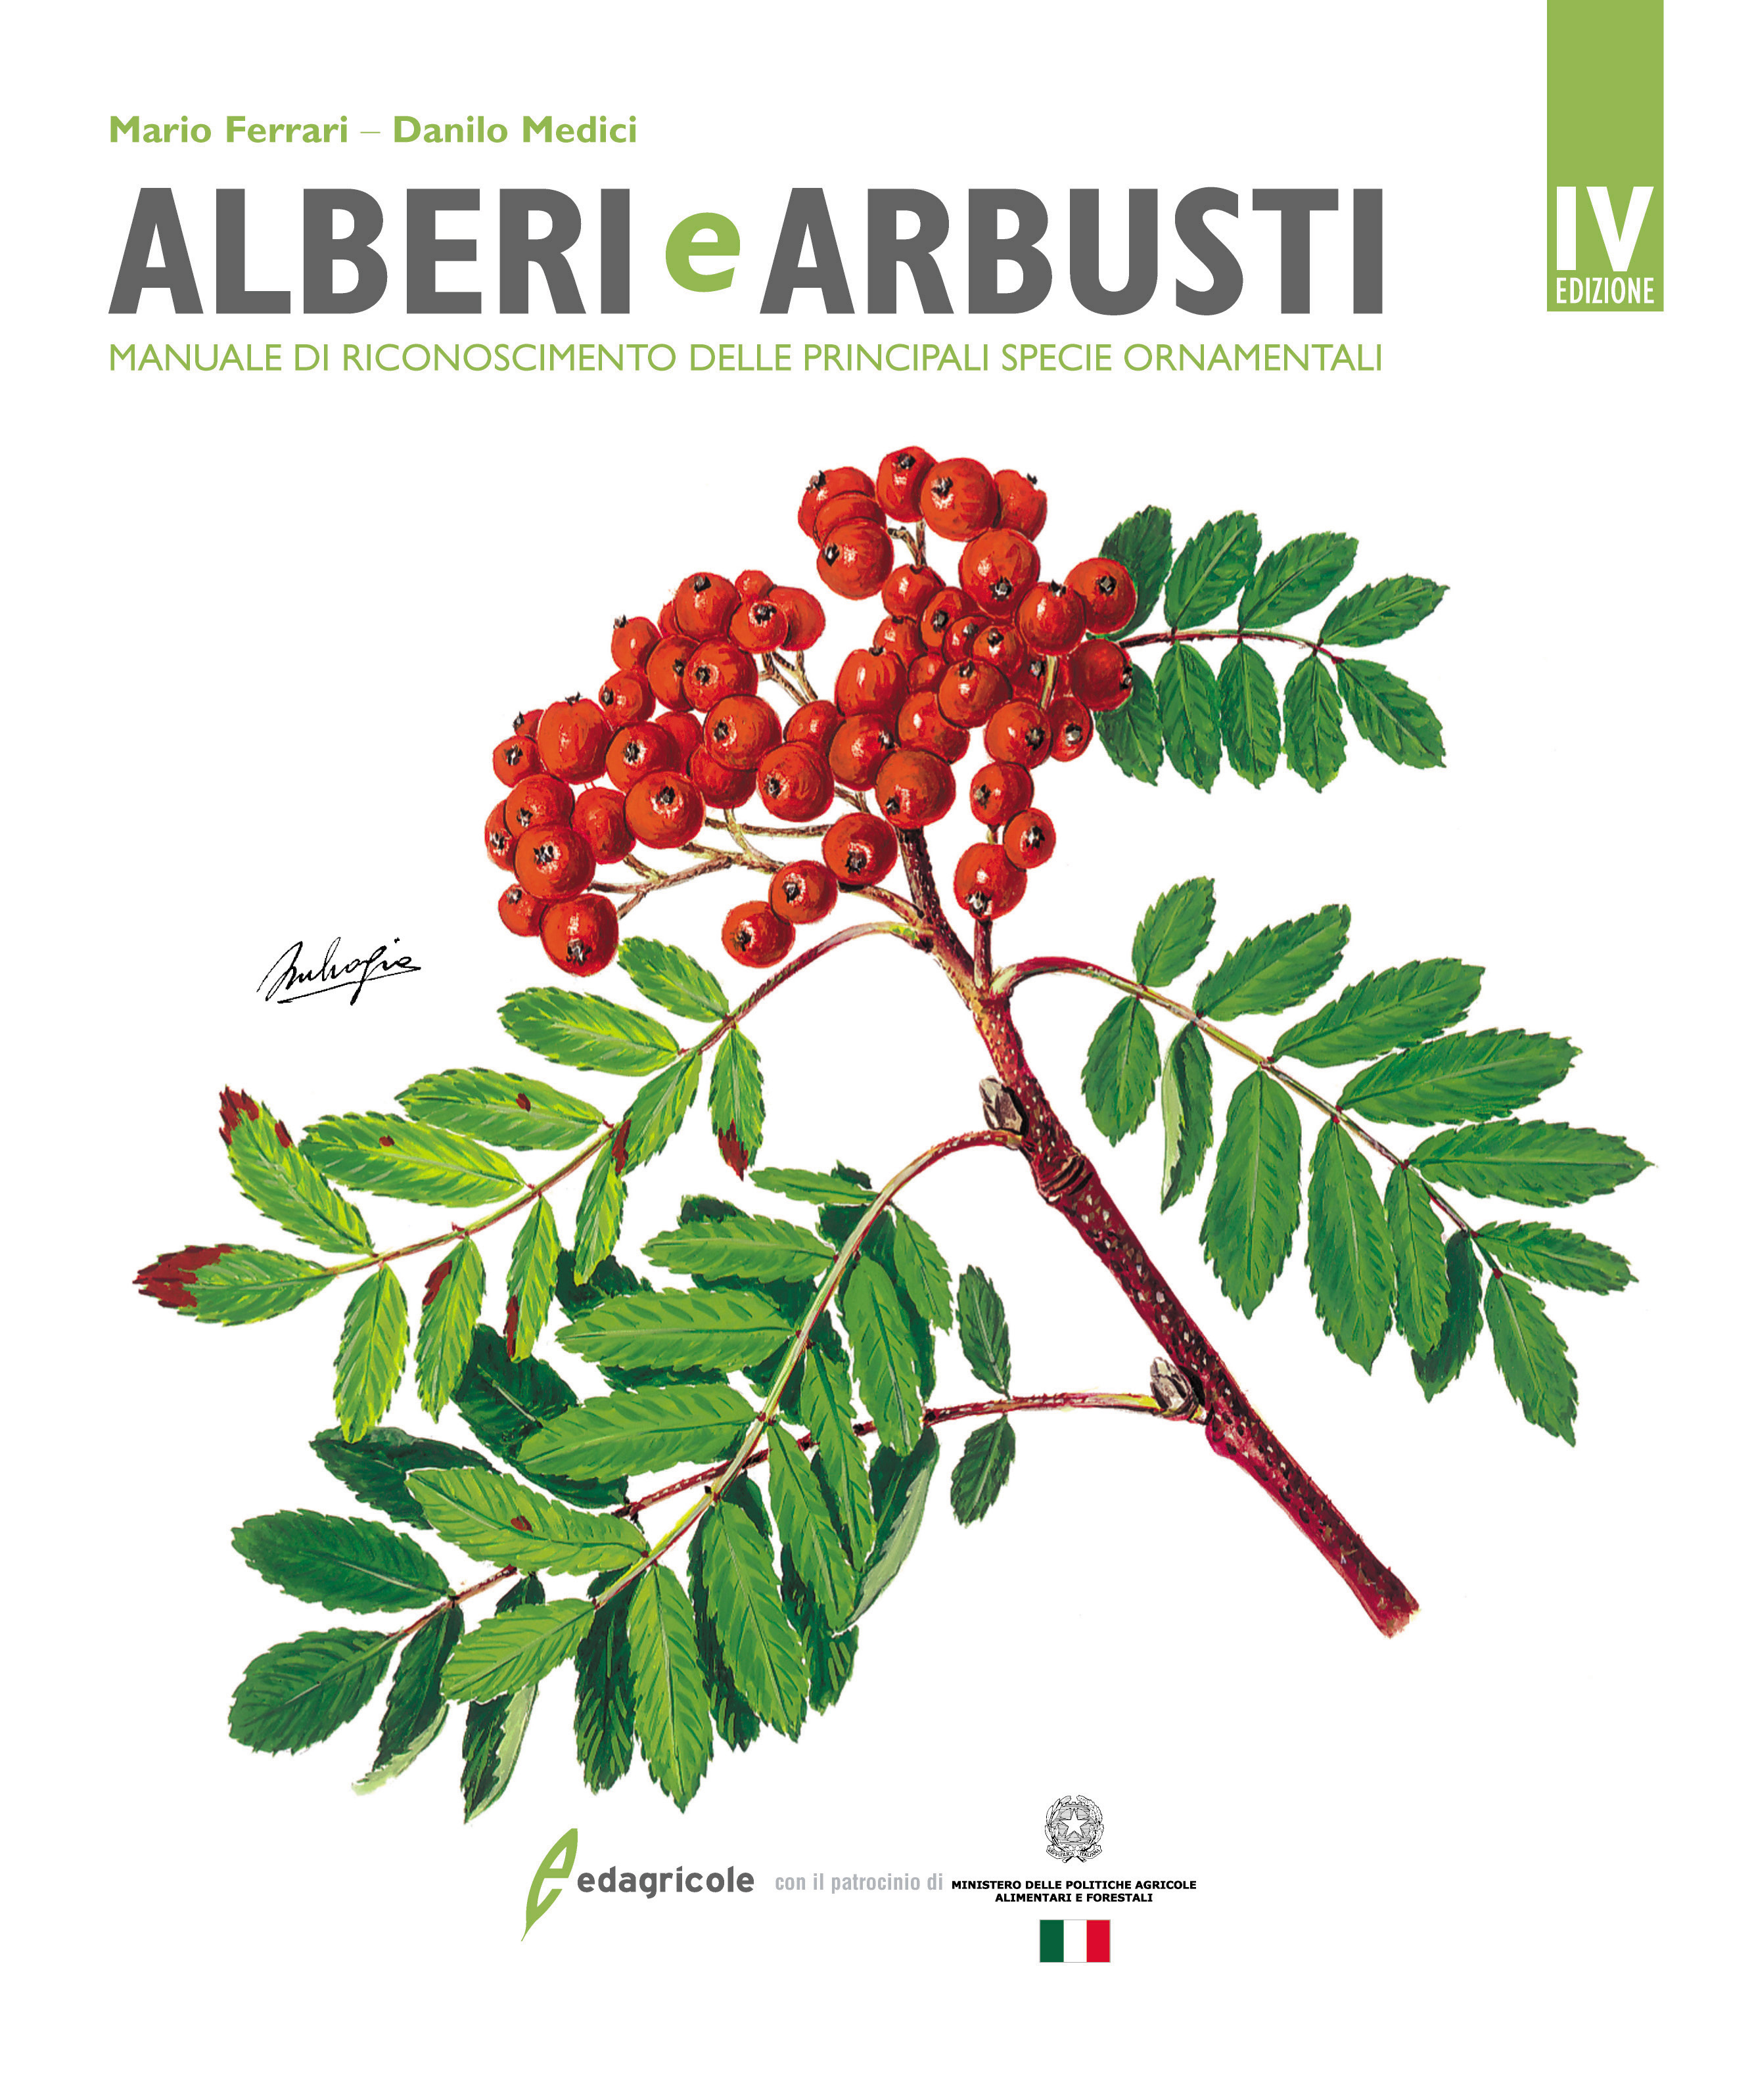 Arbusti "prodotto naturale" traccia 1 Art-N 159/09 